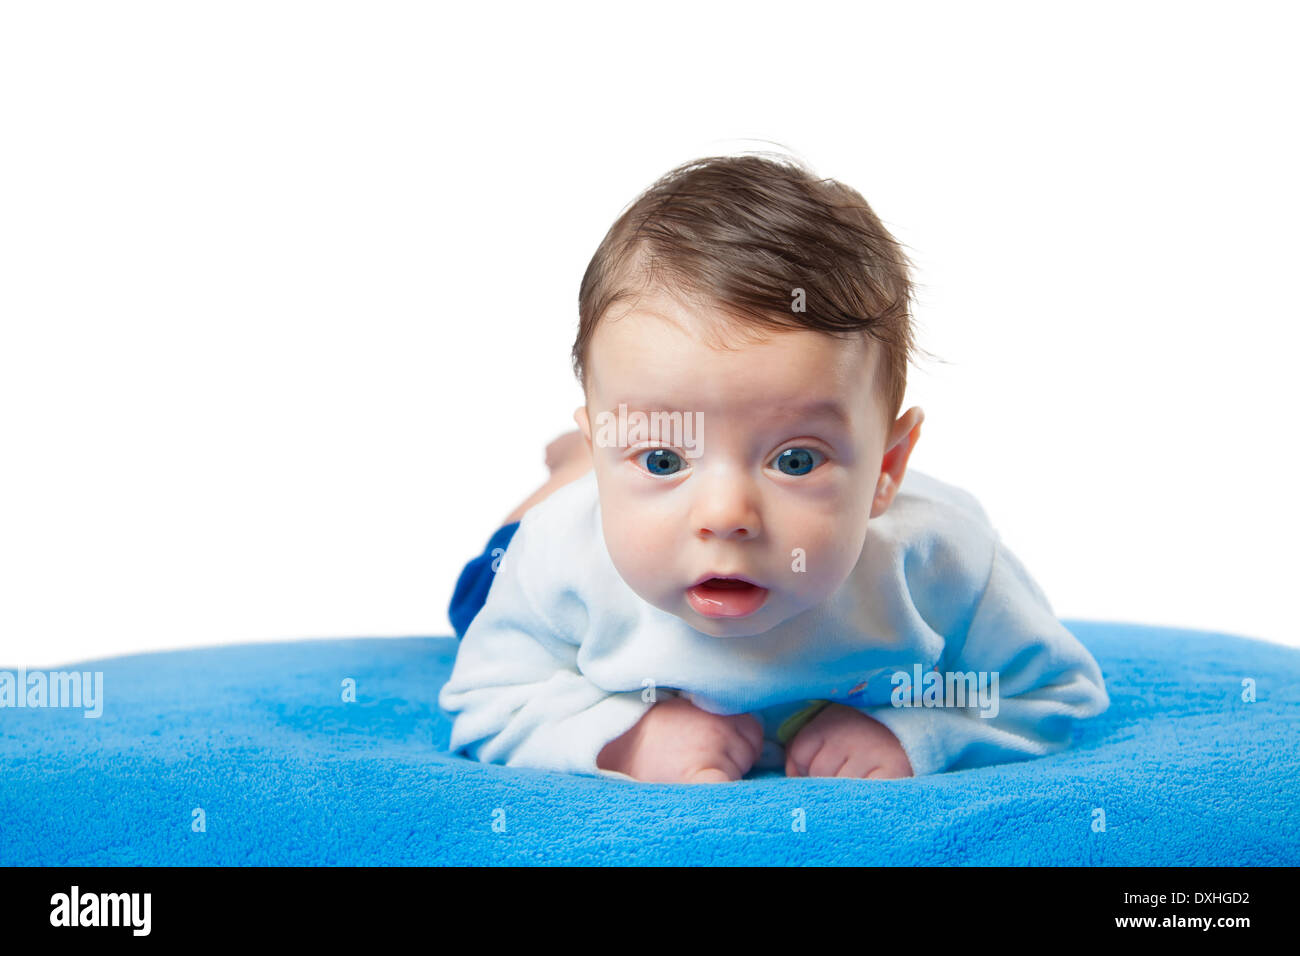 Schöne Baby Junge saß auf seinem Bauch auf blaue Decke Stockfotografie -  Alamy